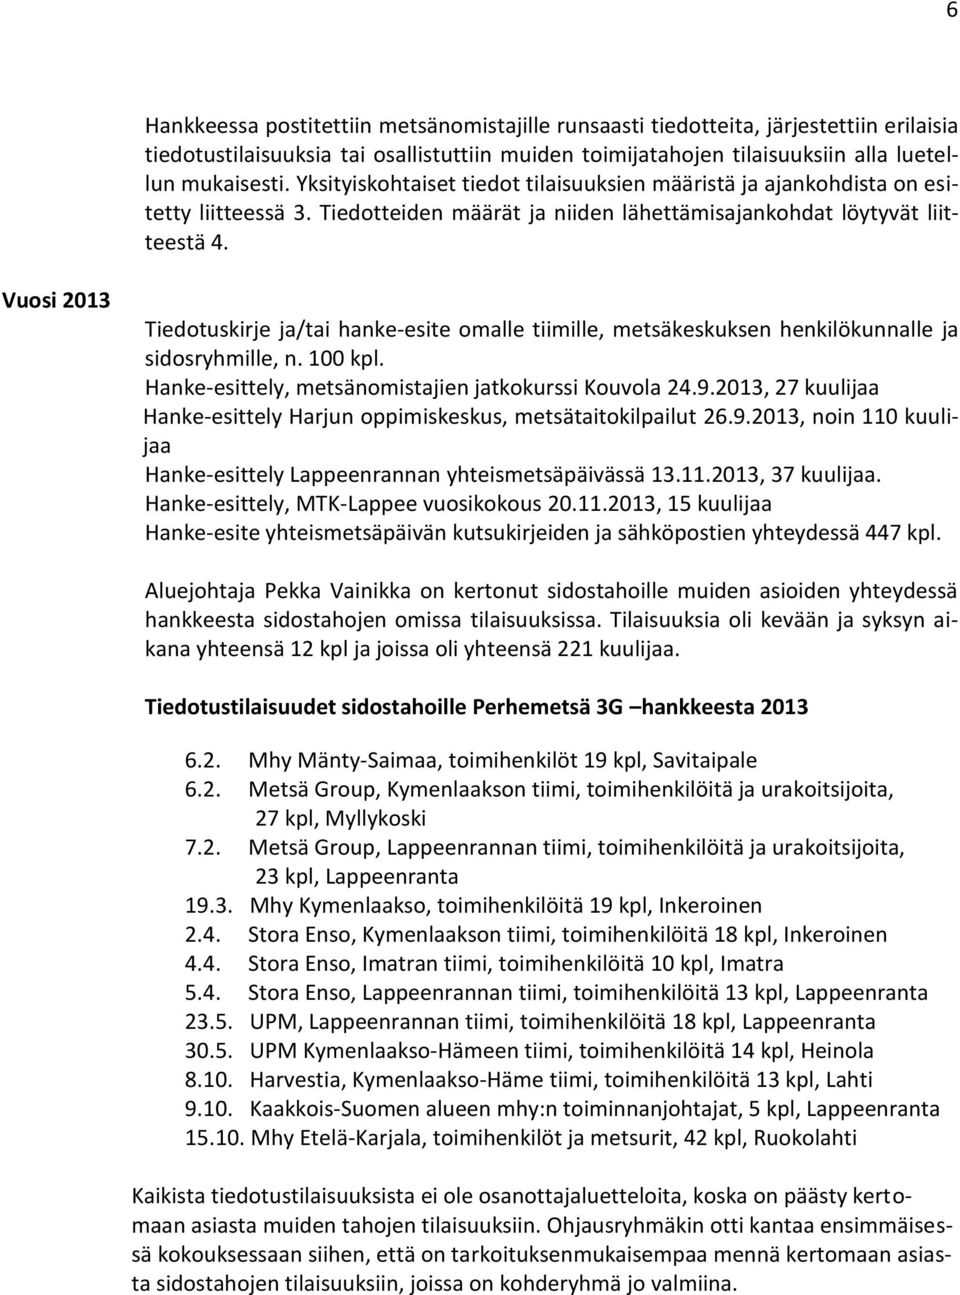 Vuosi 2013 Tiedotuskirje ja/tai hanke-esite omalle tiimille, metsäkeskuksen henkilökunnalle ja sidosryhmille, n. 100 kpl. Hanke-esittely, metsänomistajien jatkokurssi Kouvola 24.9.